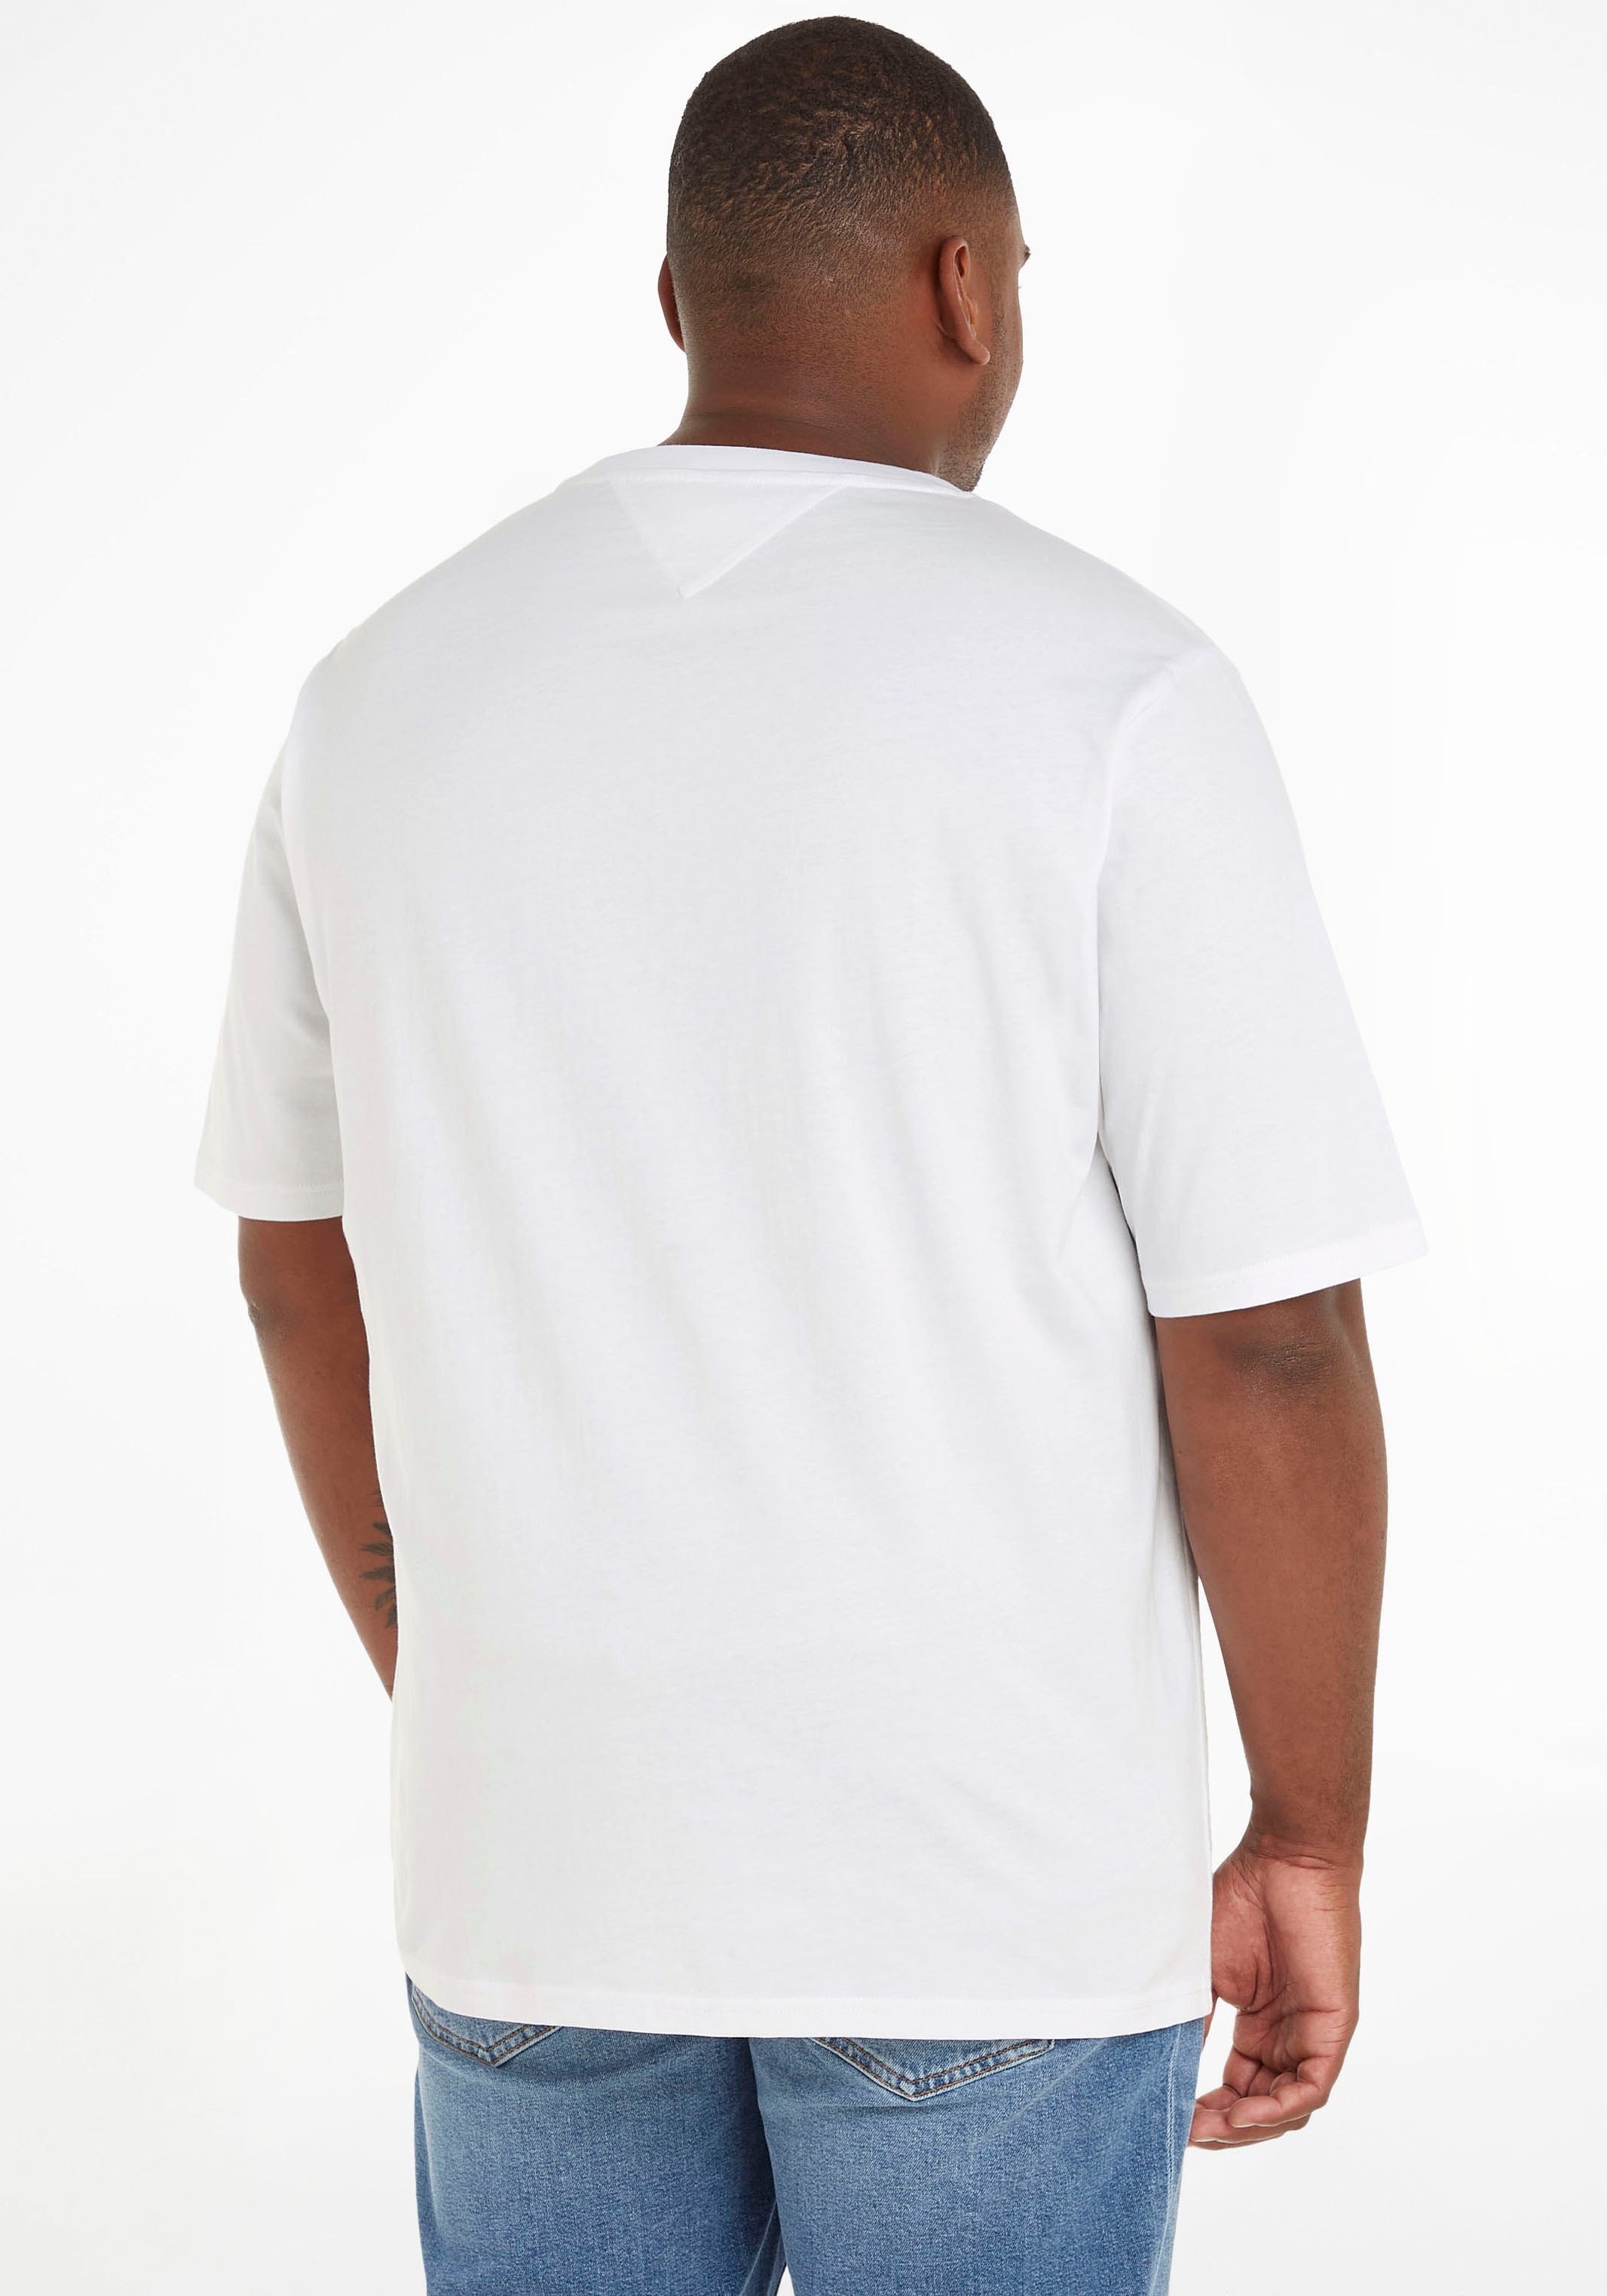 ➤ Shirts versandkostenfrei - ohne Mindestbestellwert shoppen